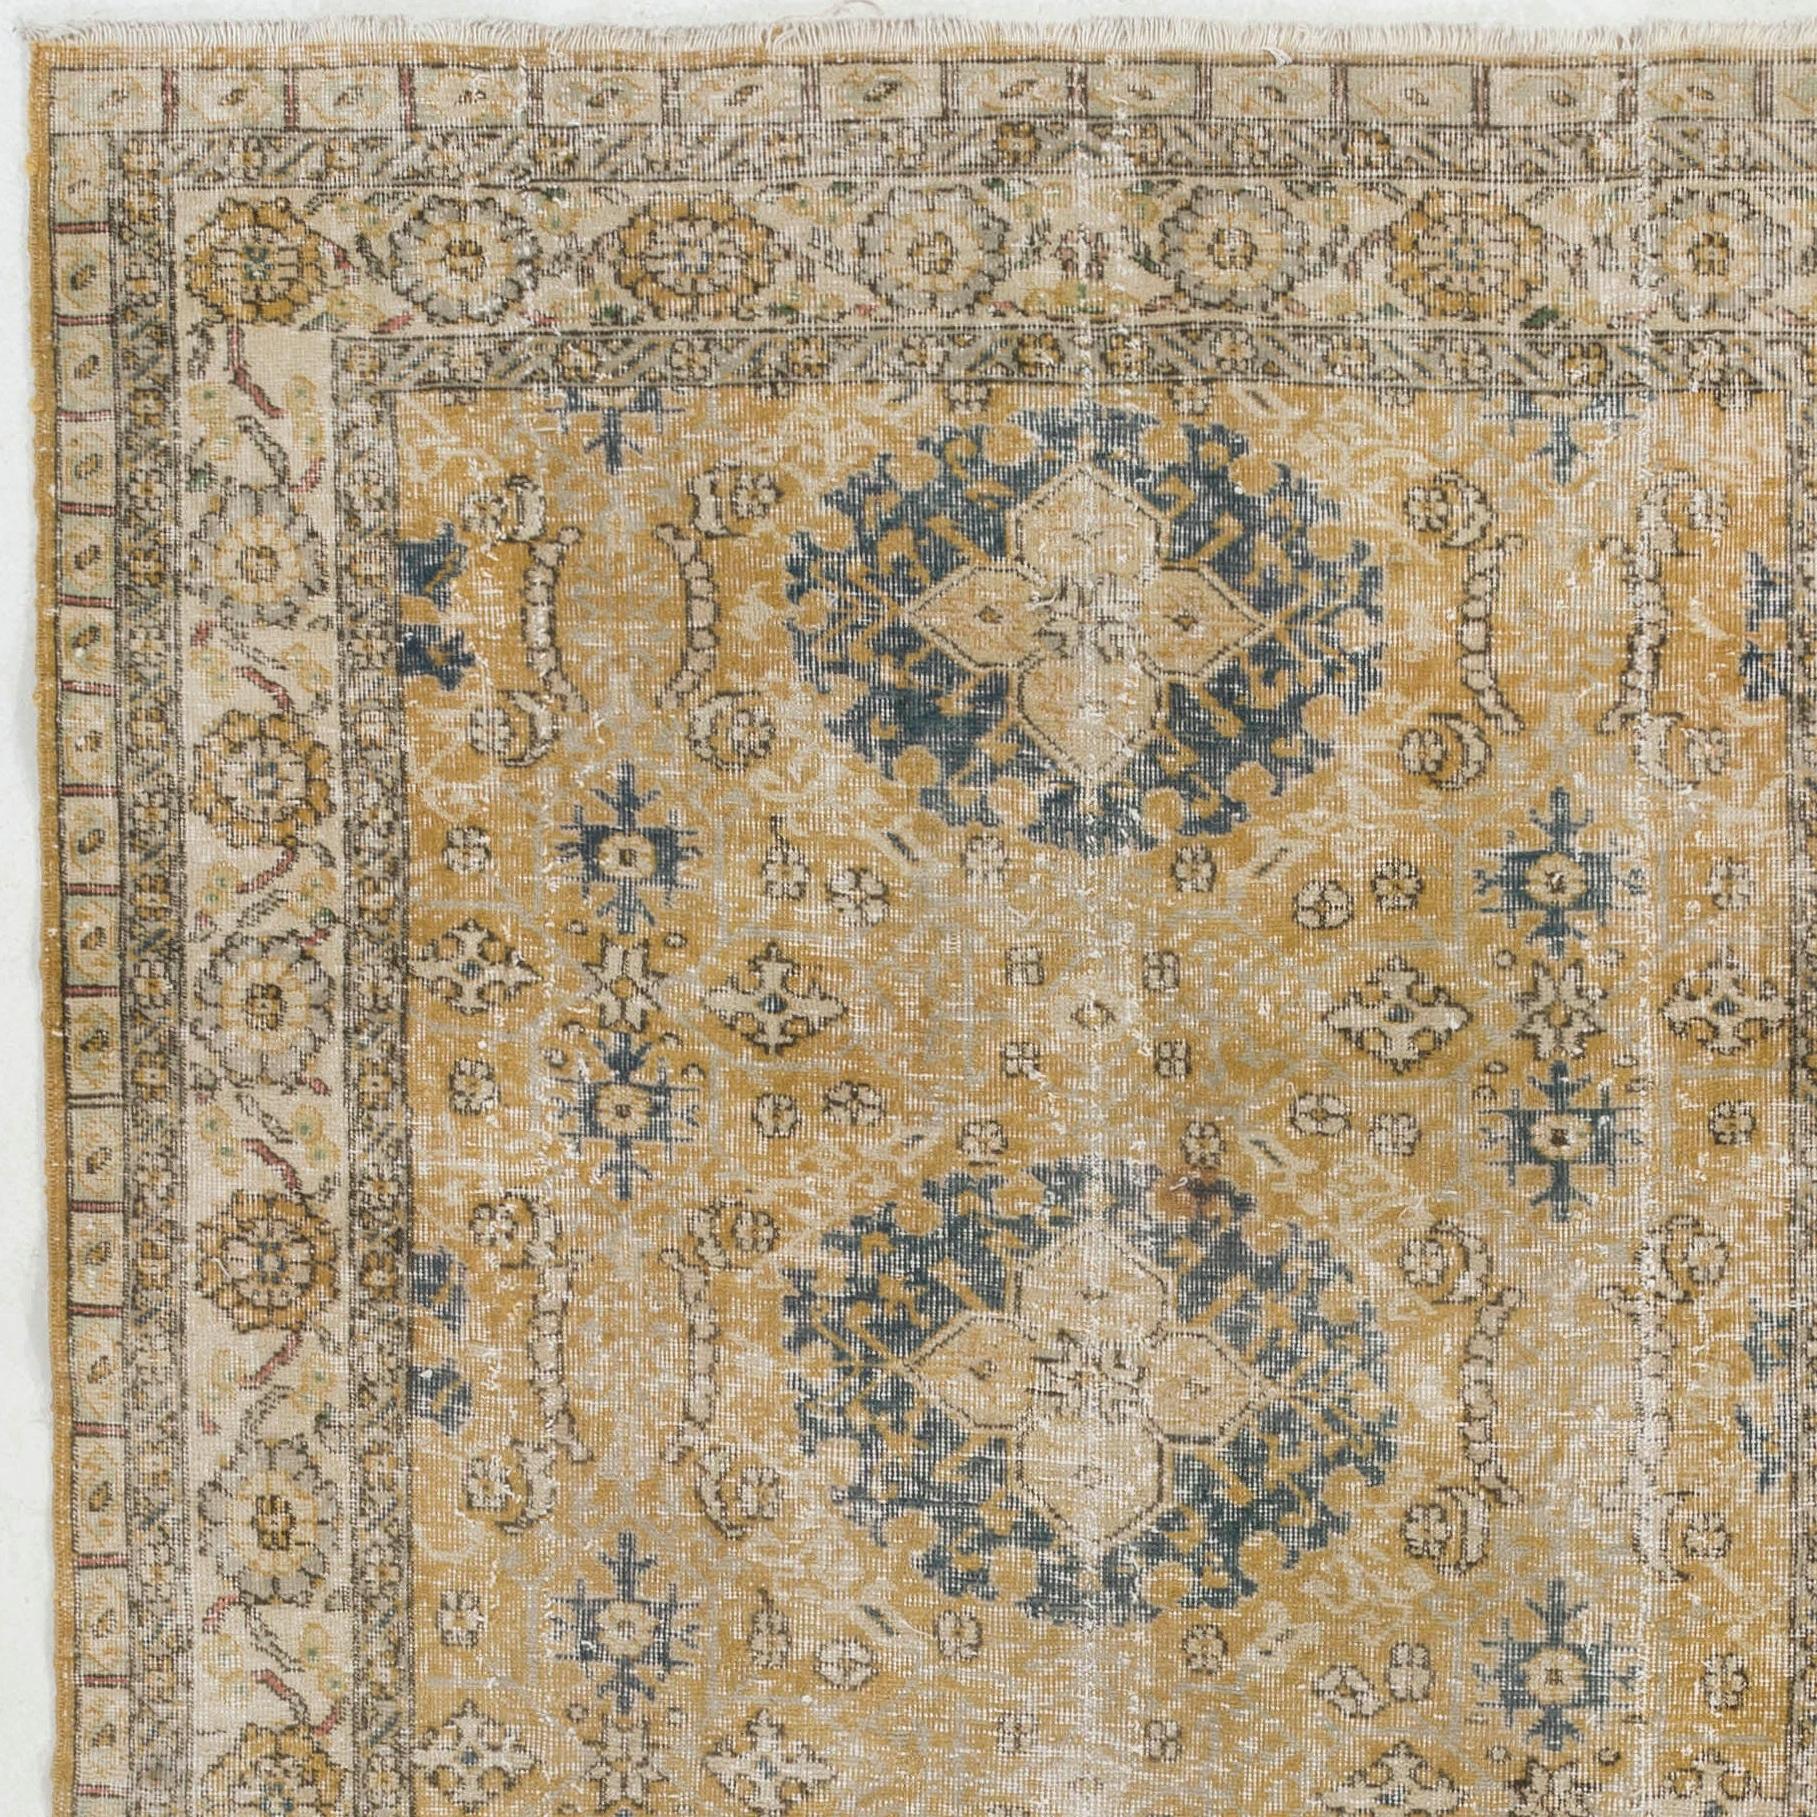 Nos tapis délavés par le soleil sont tous des pièces uniques, nouées à la main, datant de 50 à 70 ans. Chacun d'entre eux présente une esthétique artisanale unique, issue des traditions séculaires de tissage de tapis turcs. Ces tapis sont